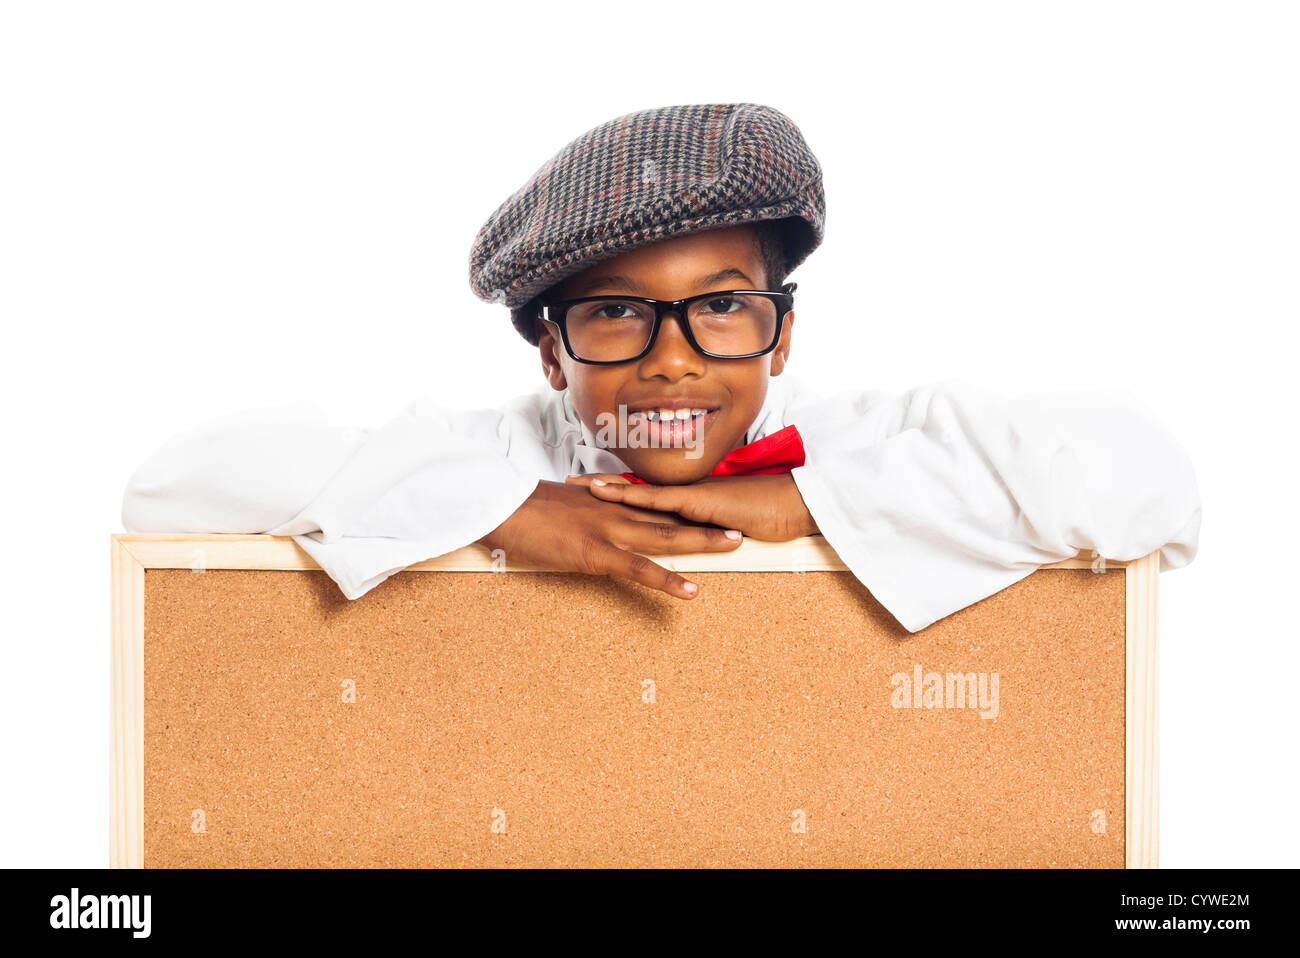 Portrait of happy cute school boy avec panneau de liège, isolé sur fond blanc. Banque D'Images